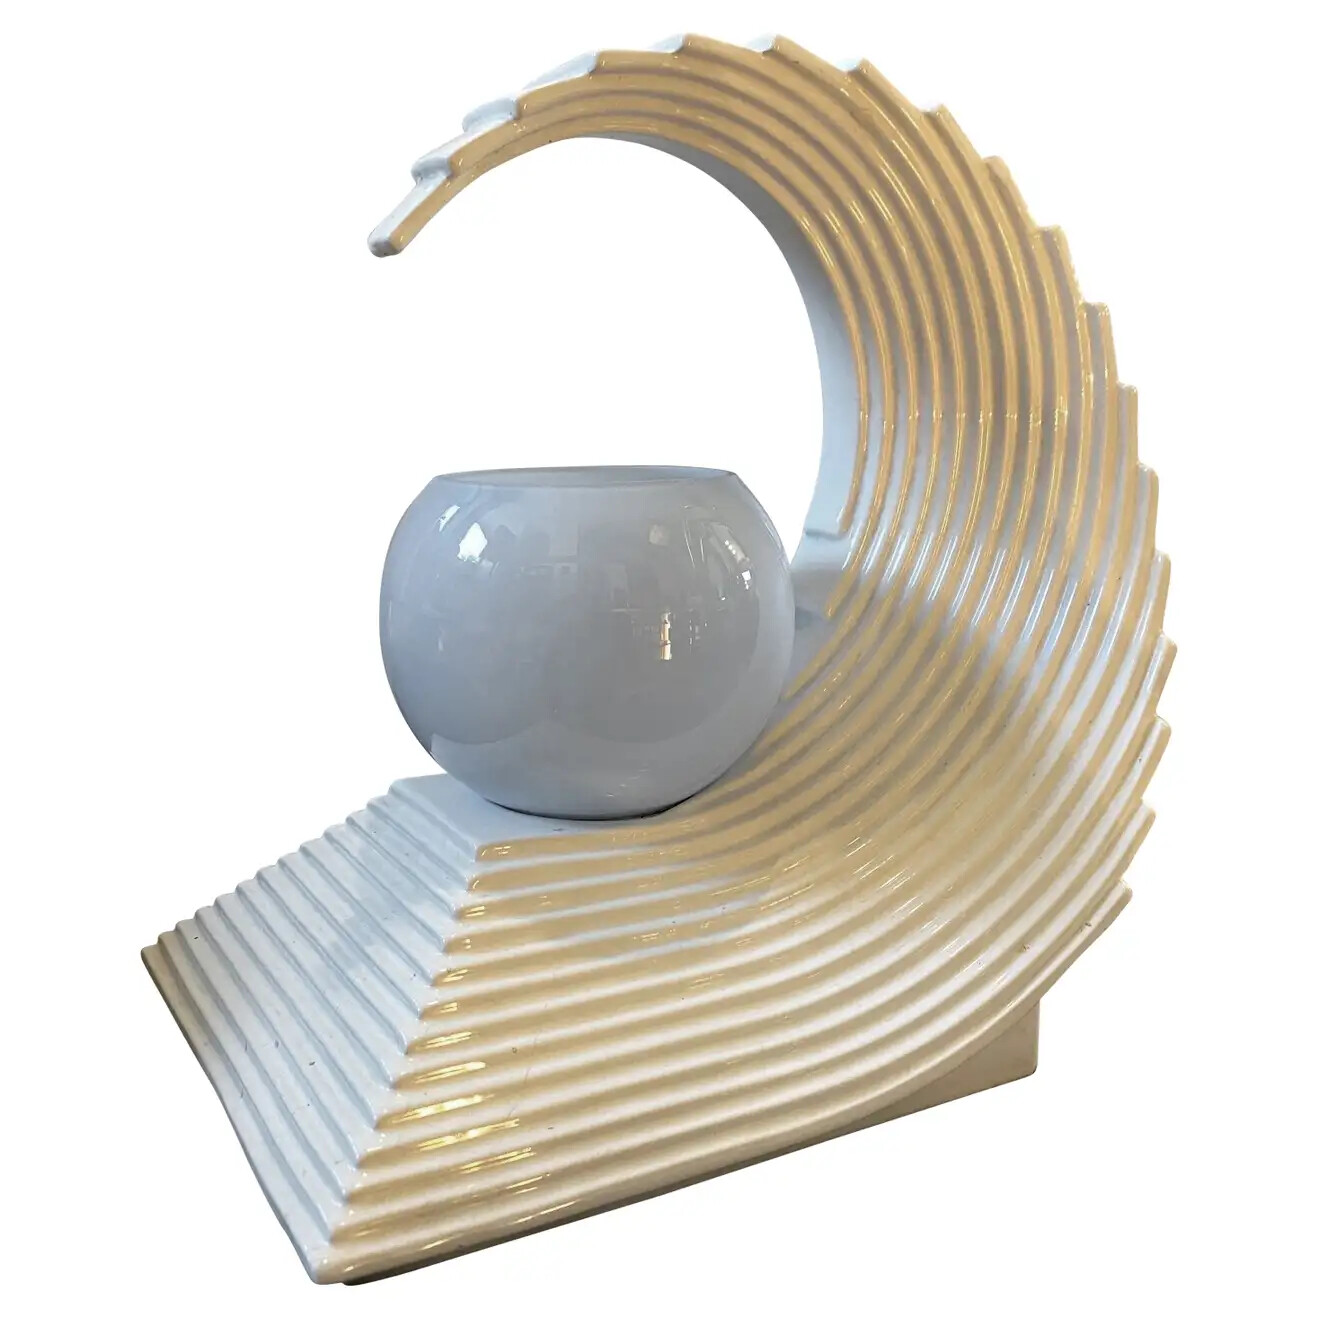 1970s Modernist White Ceramic Italian Wave Table Lamp